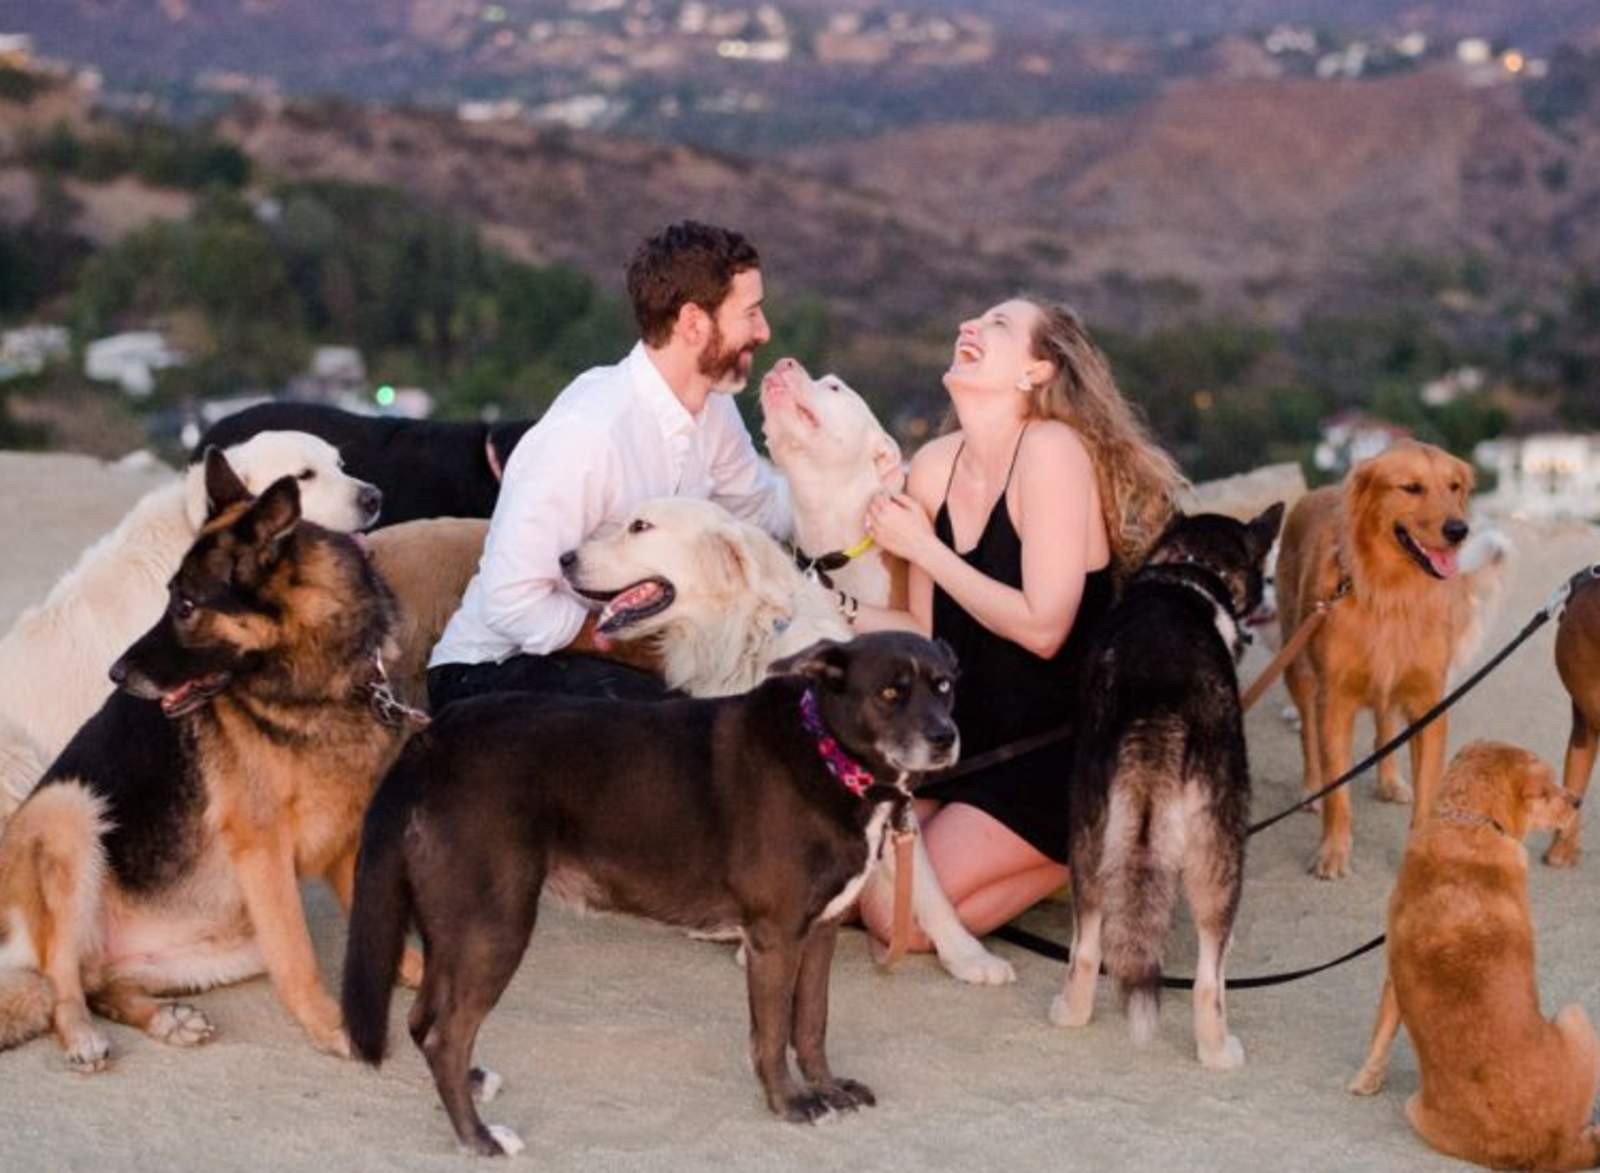 Le propone matrimonio a su novia con ayuda de 16 perros